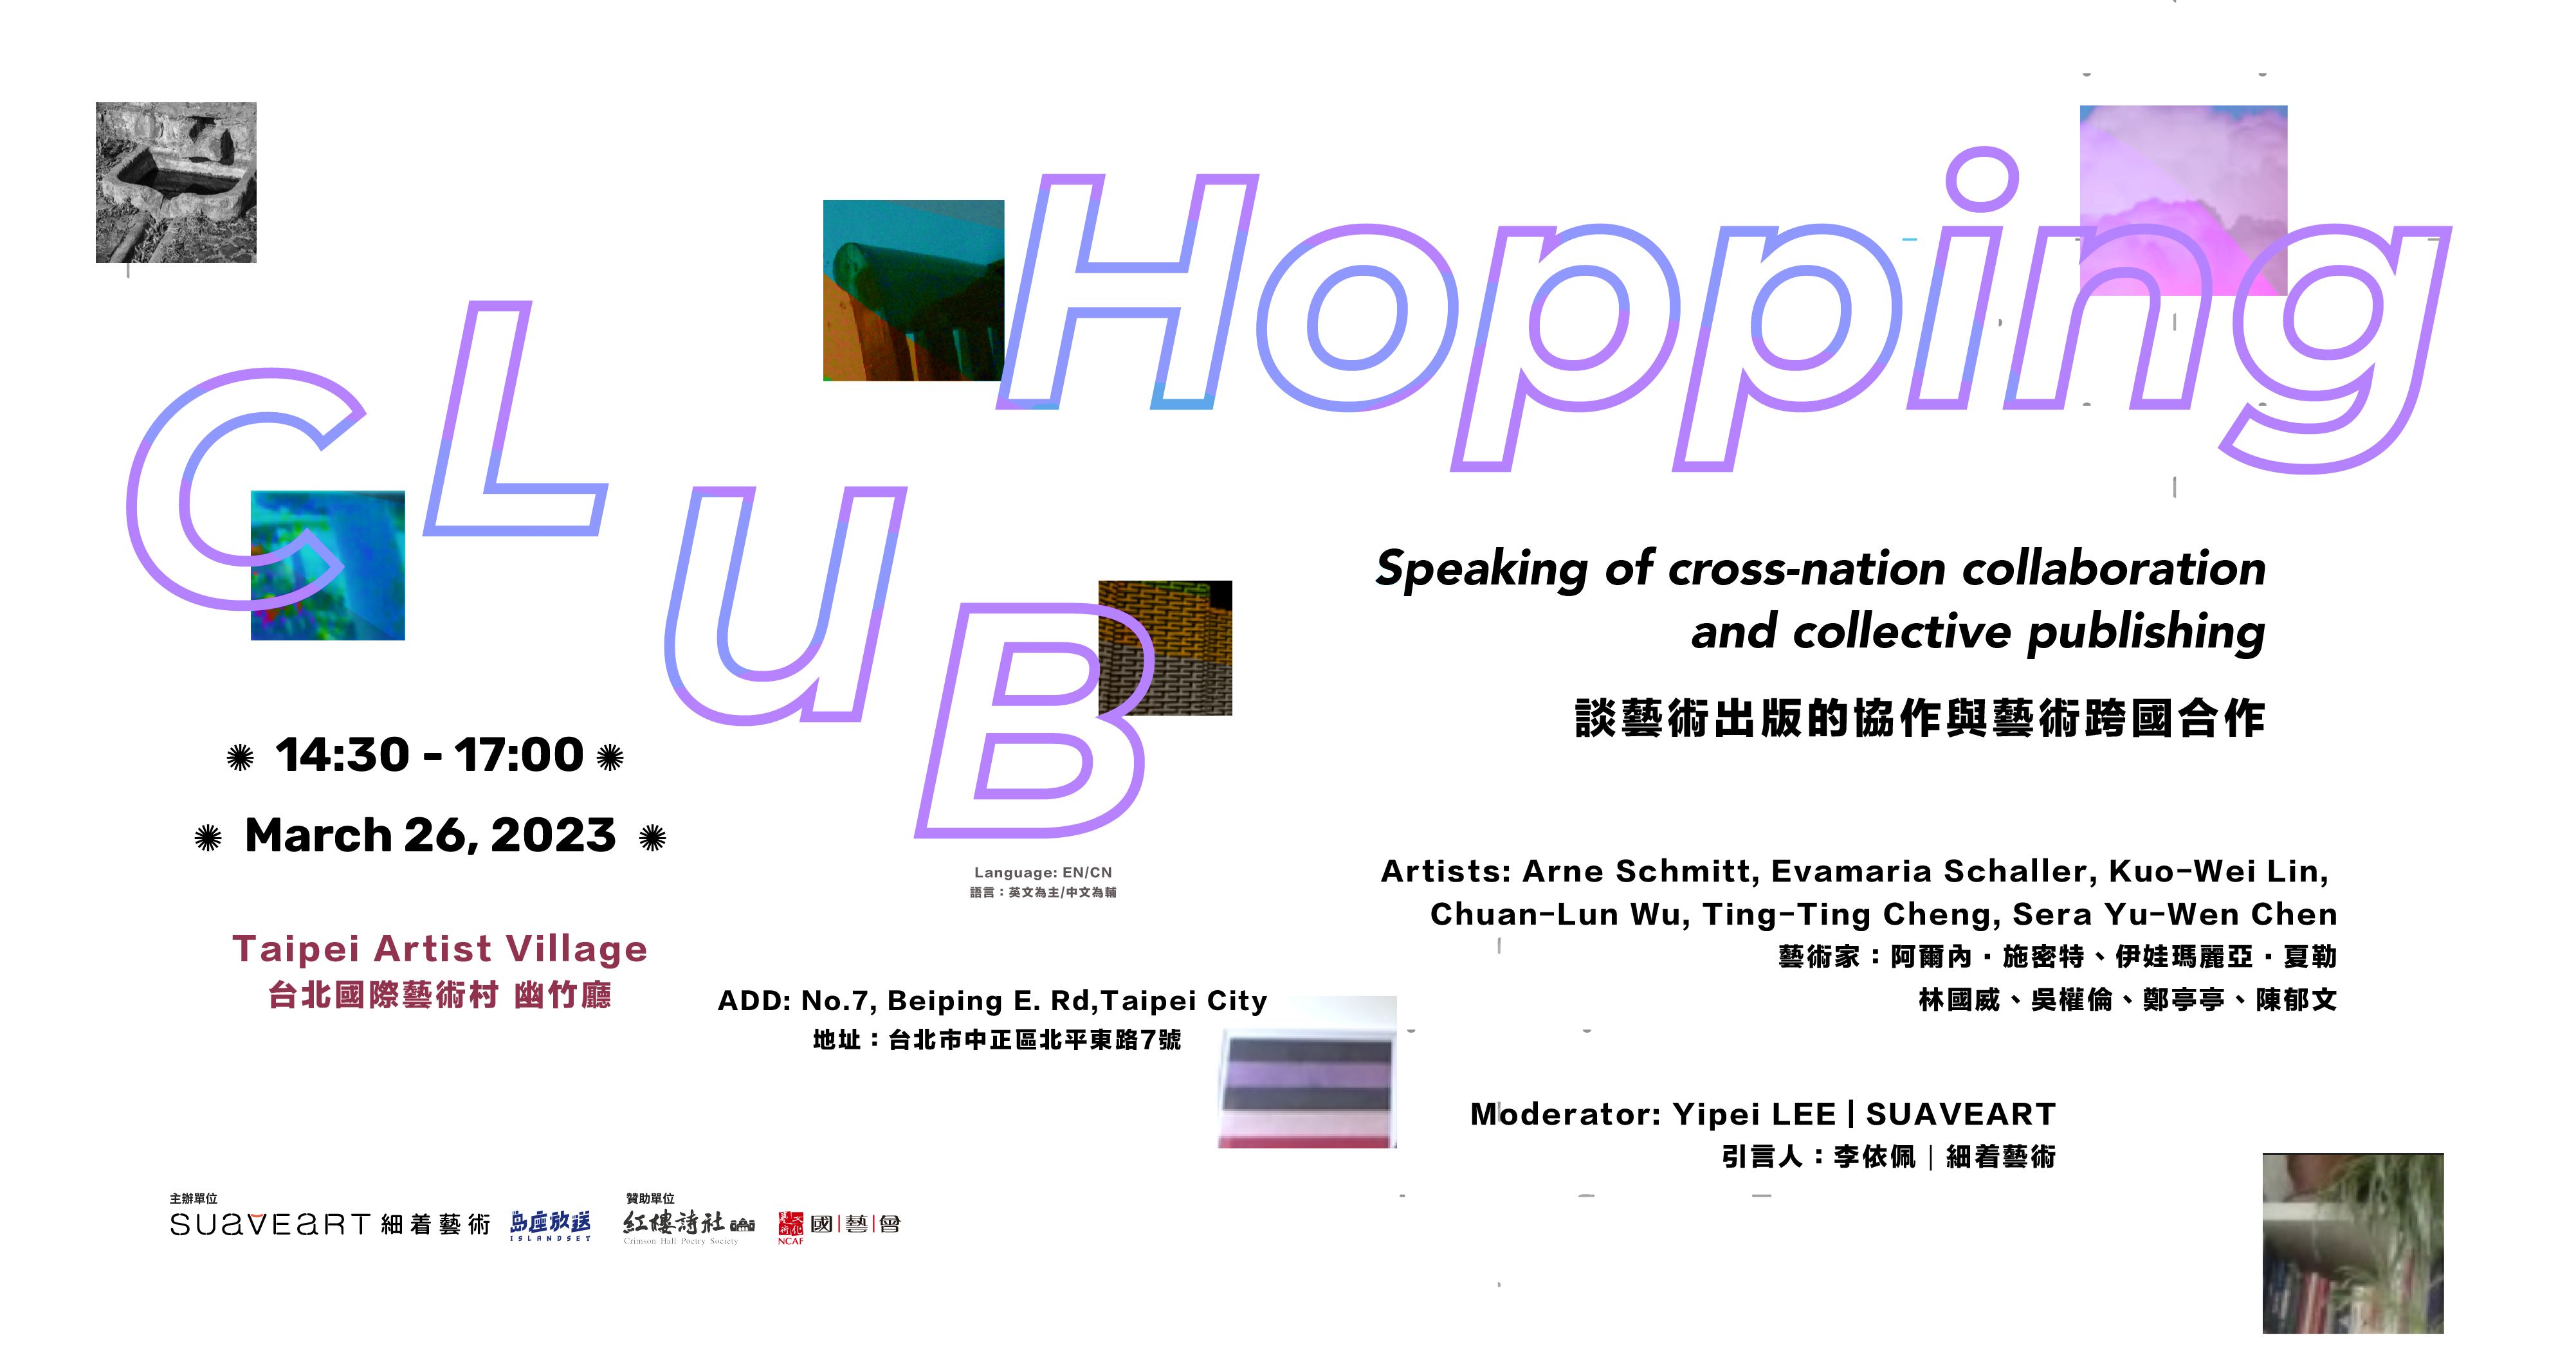 台德交流:Club Hopping-談藝術出版協作與跨國合作